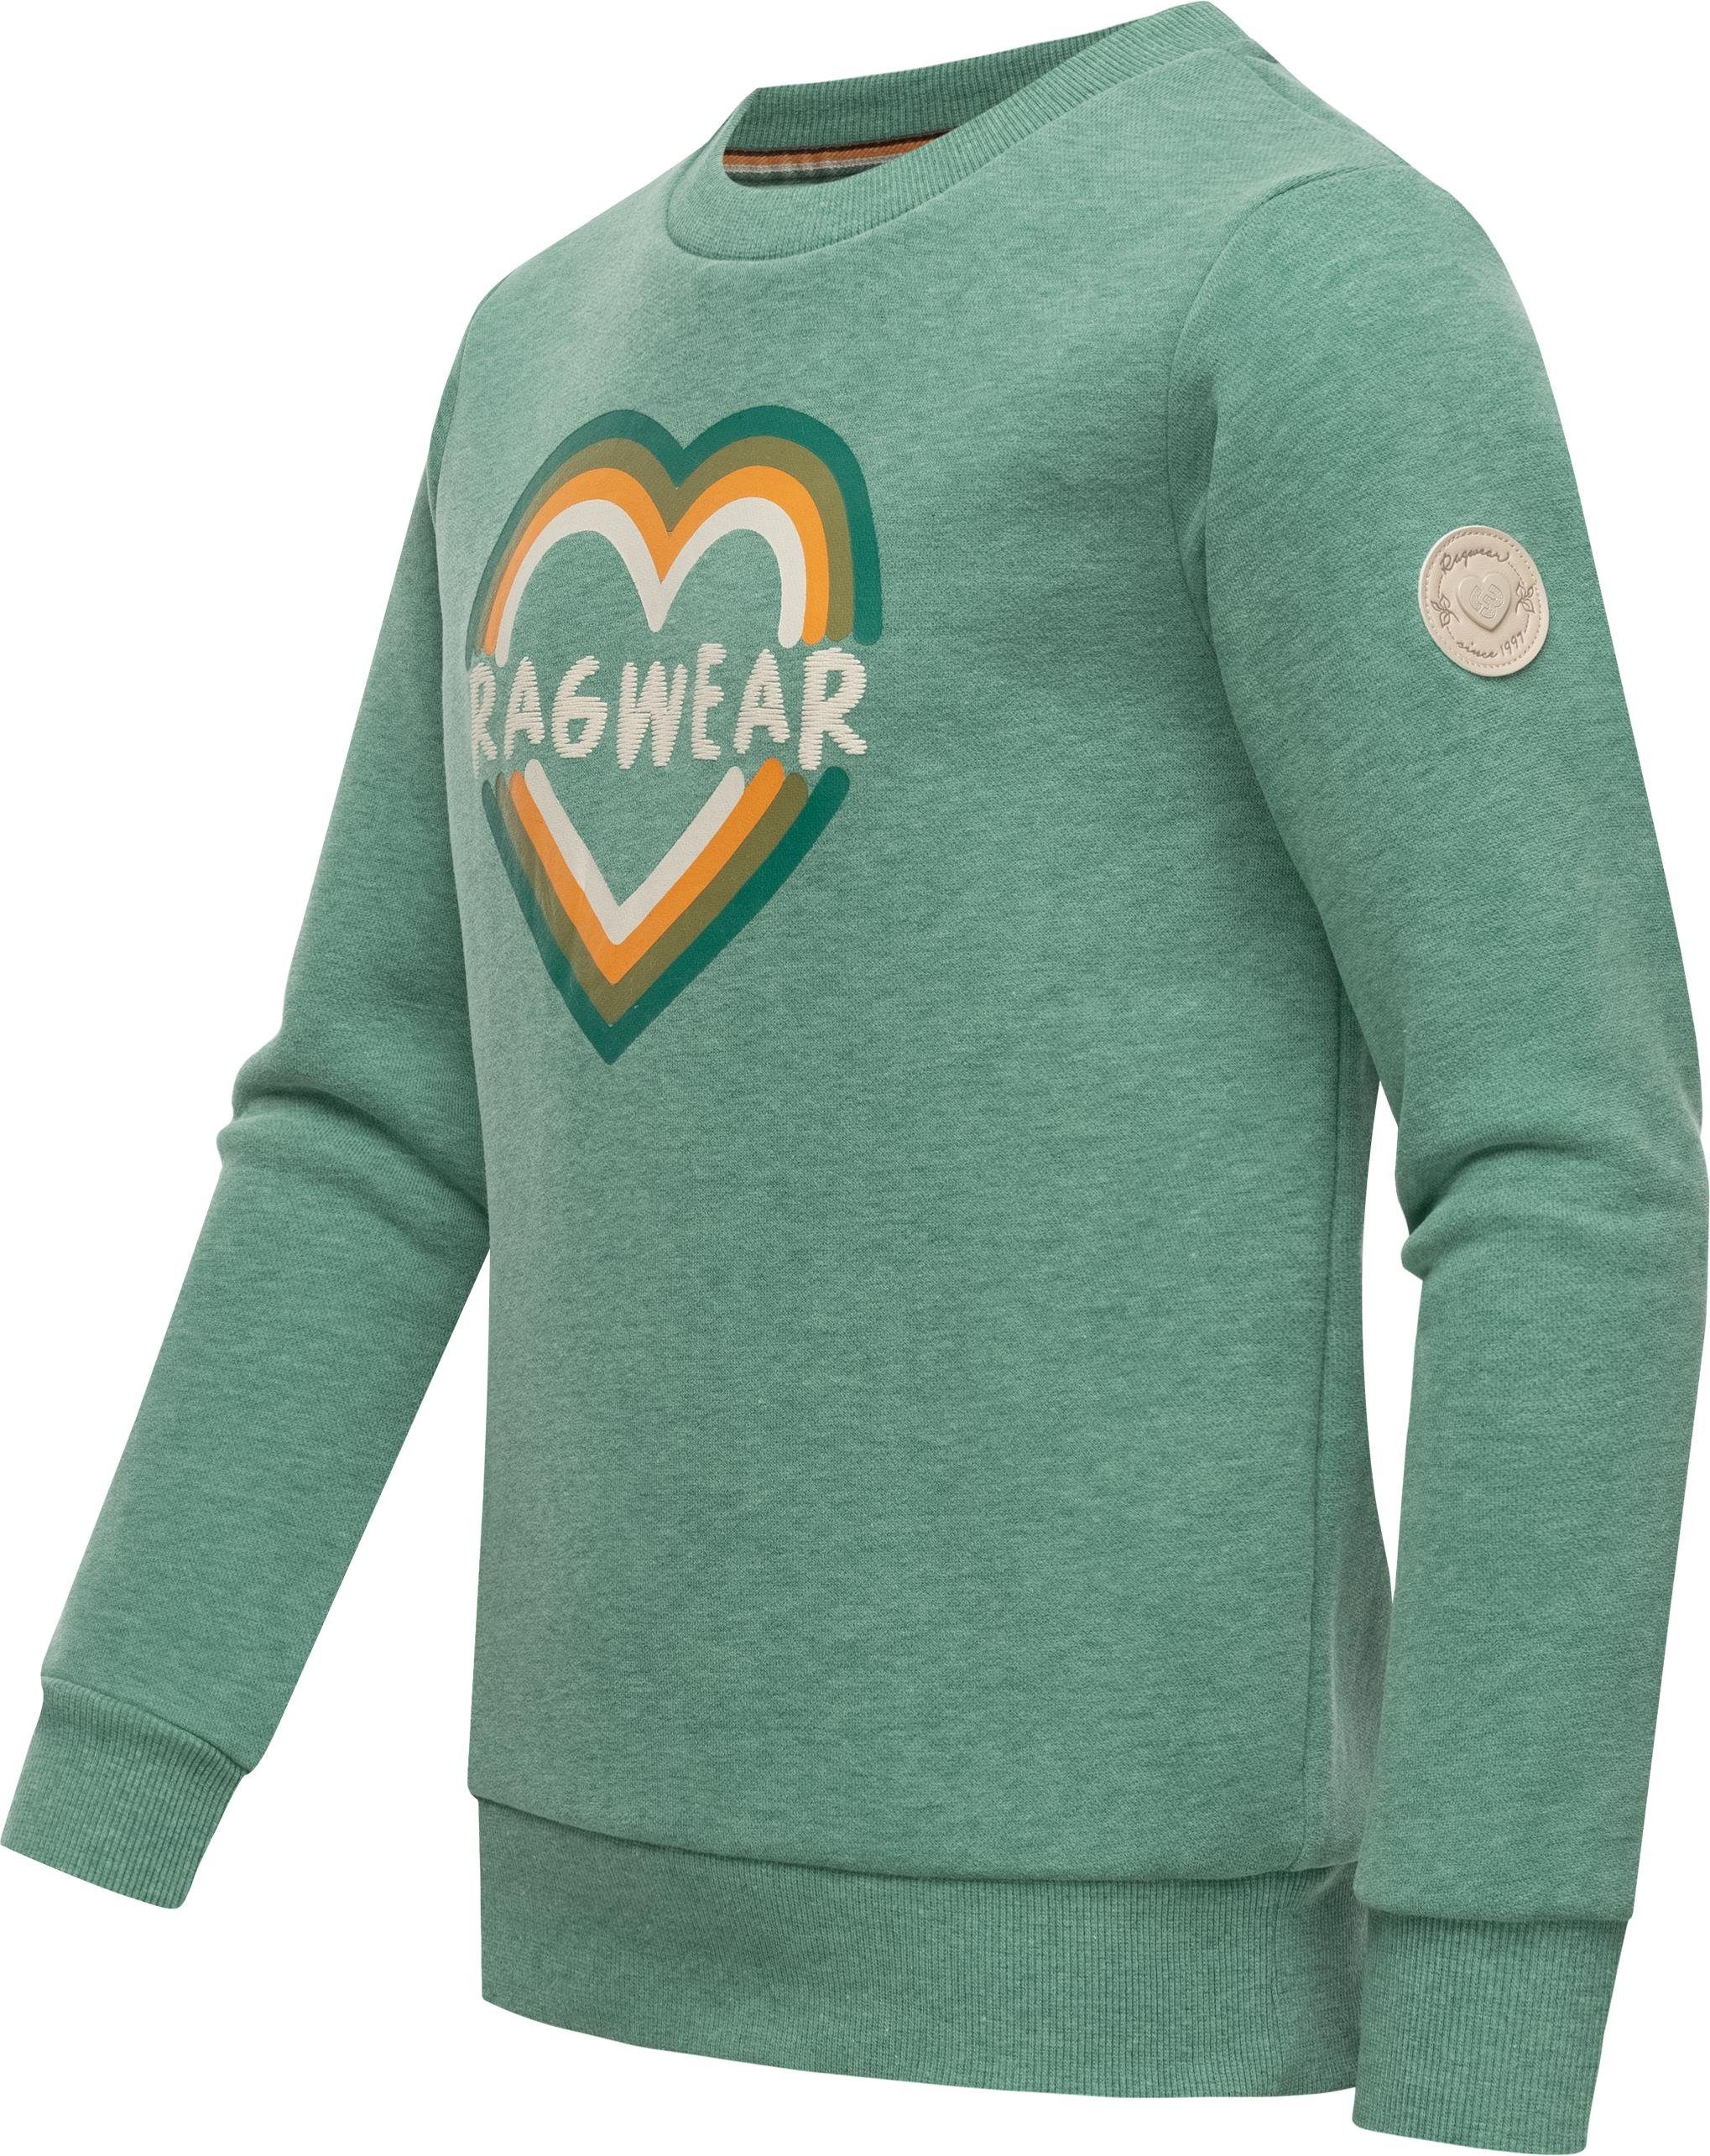 Ragwear Sweater Evka Print stylisches Logo mint coolem Mädchen Sweatshirt mit Print